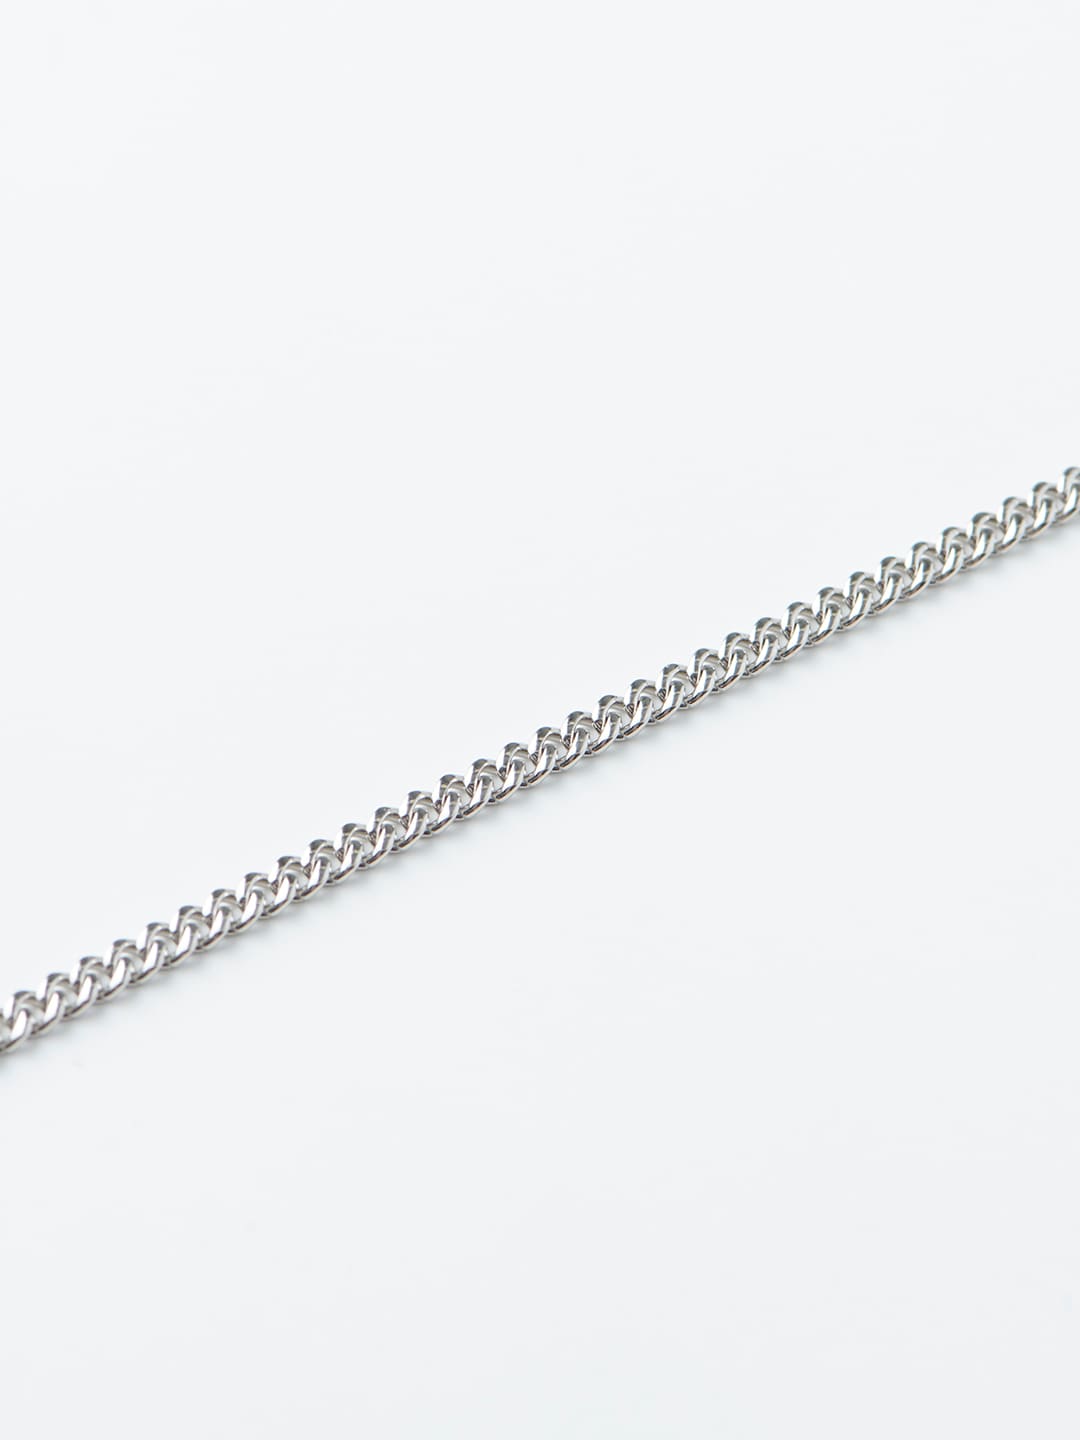 Long & Short Kihei Bracelet / S - Platinum